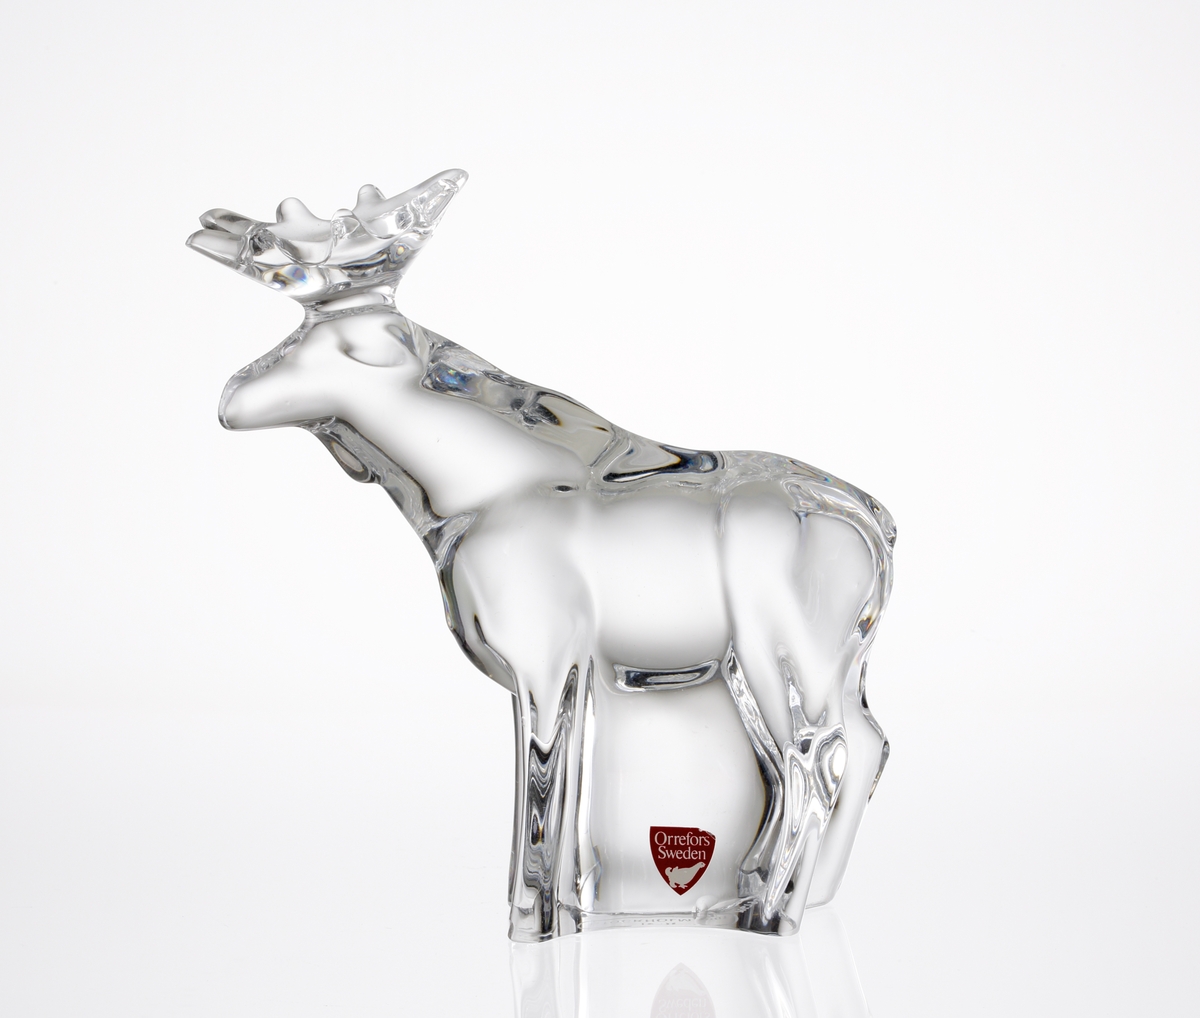 Glasfiguring i form av en stående älgtjur med krona.
Etikett: Vit text och orre mot vinröd botten (primaetikett).
Under figurinen en klisterlapp "ICIA STOCKHOLM 1981".